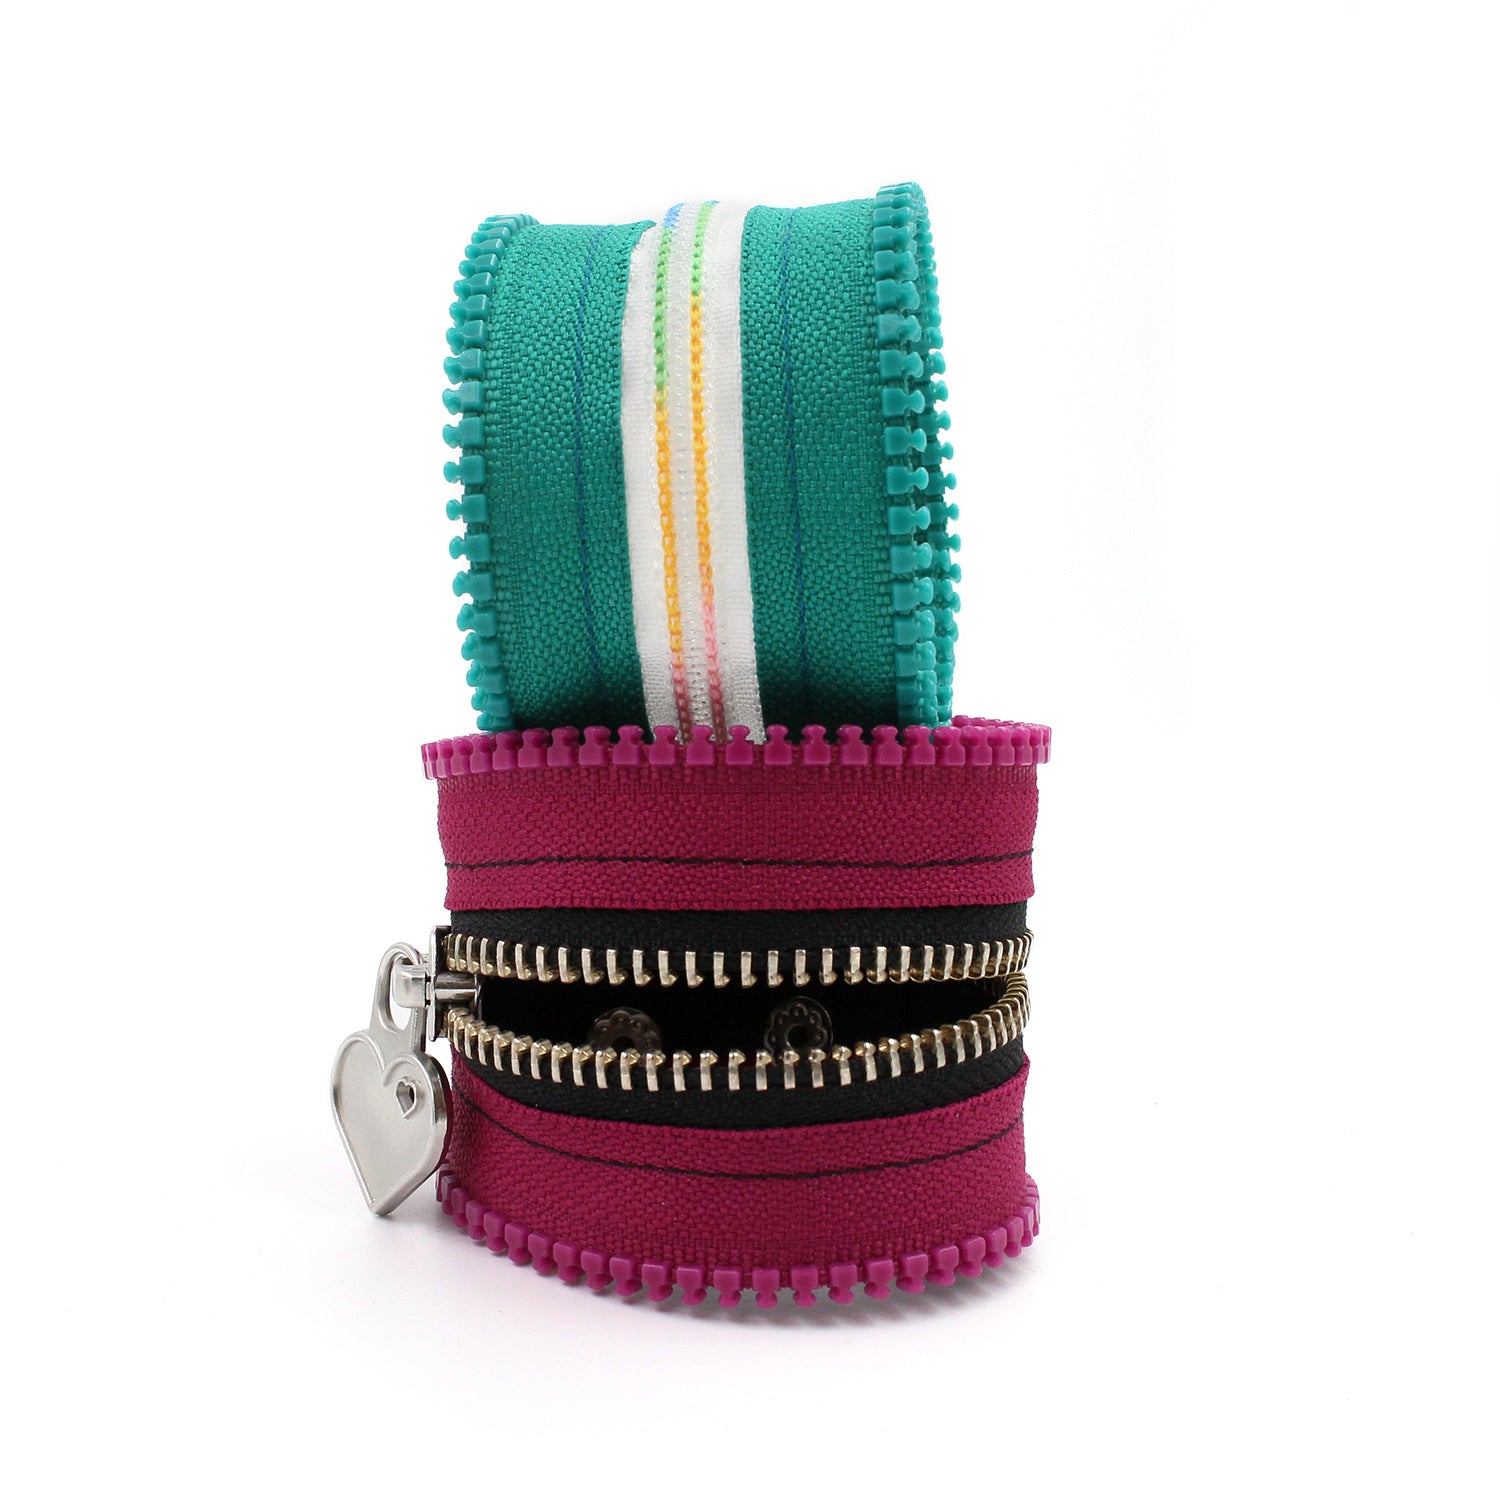 Make Your Own Custom Zipper Bracelet